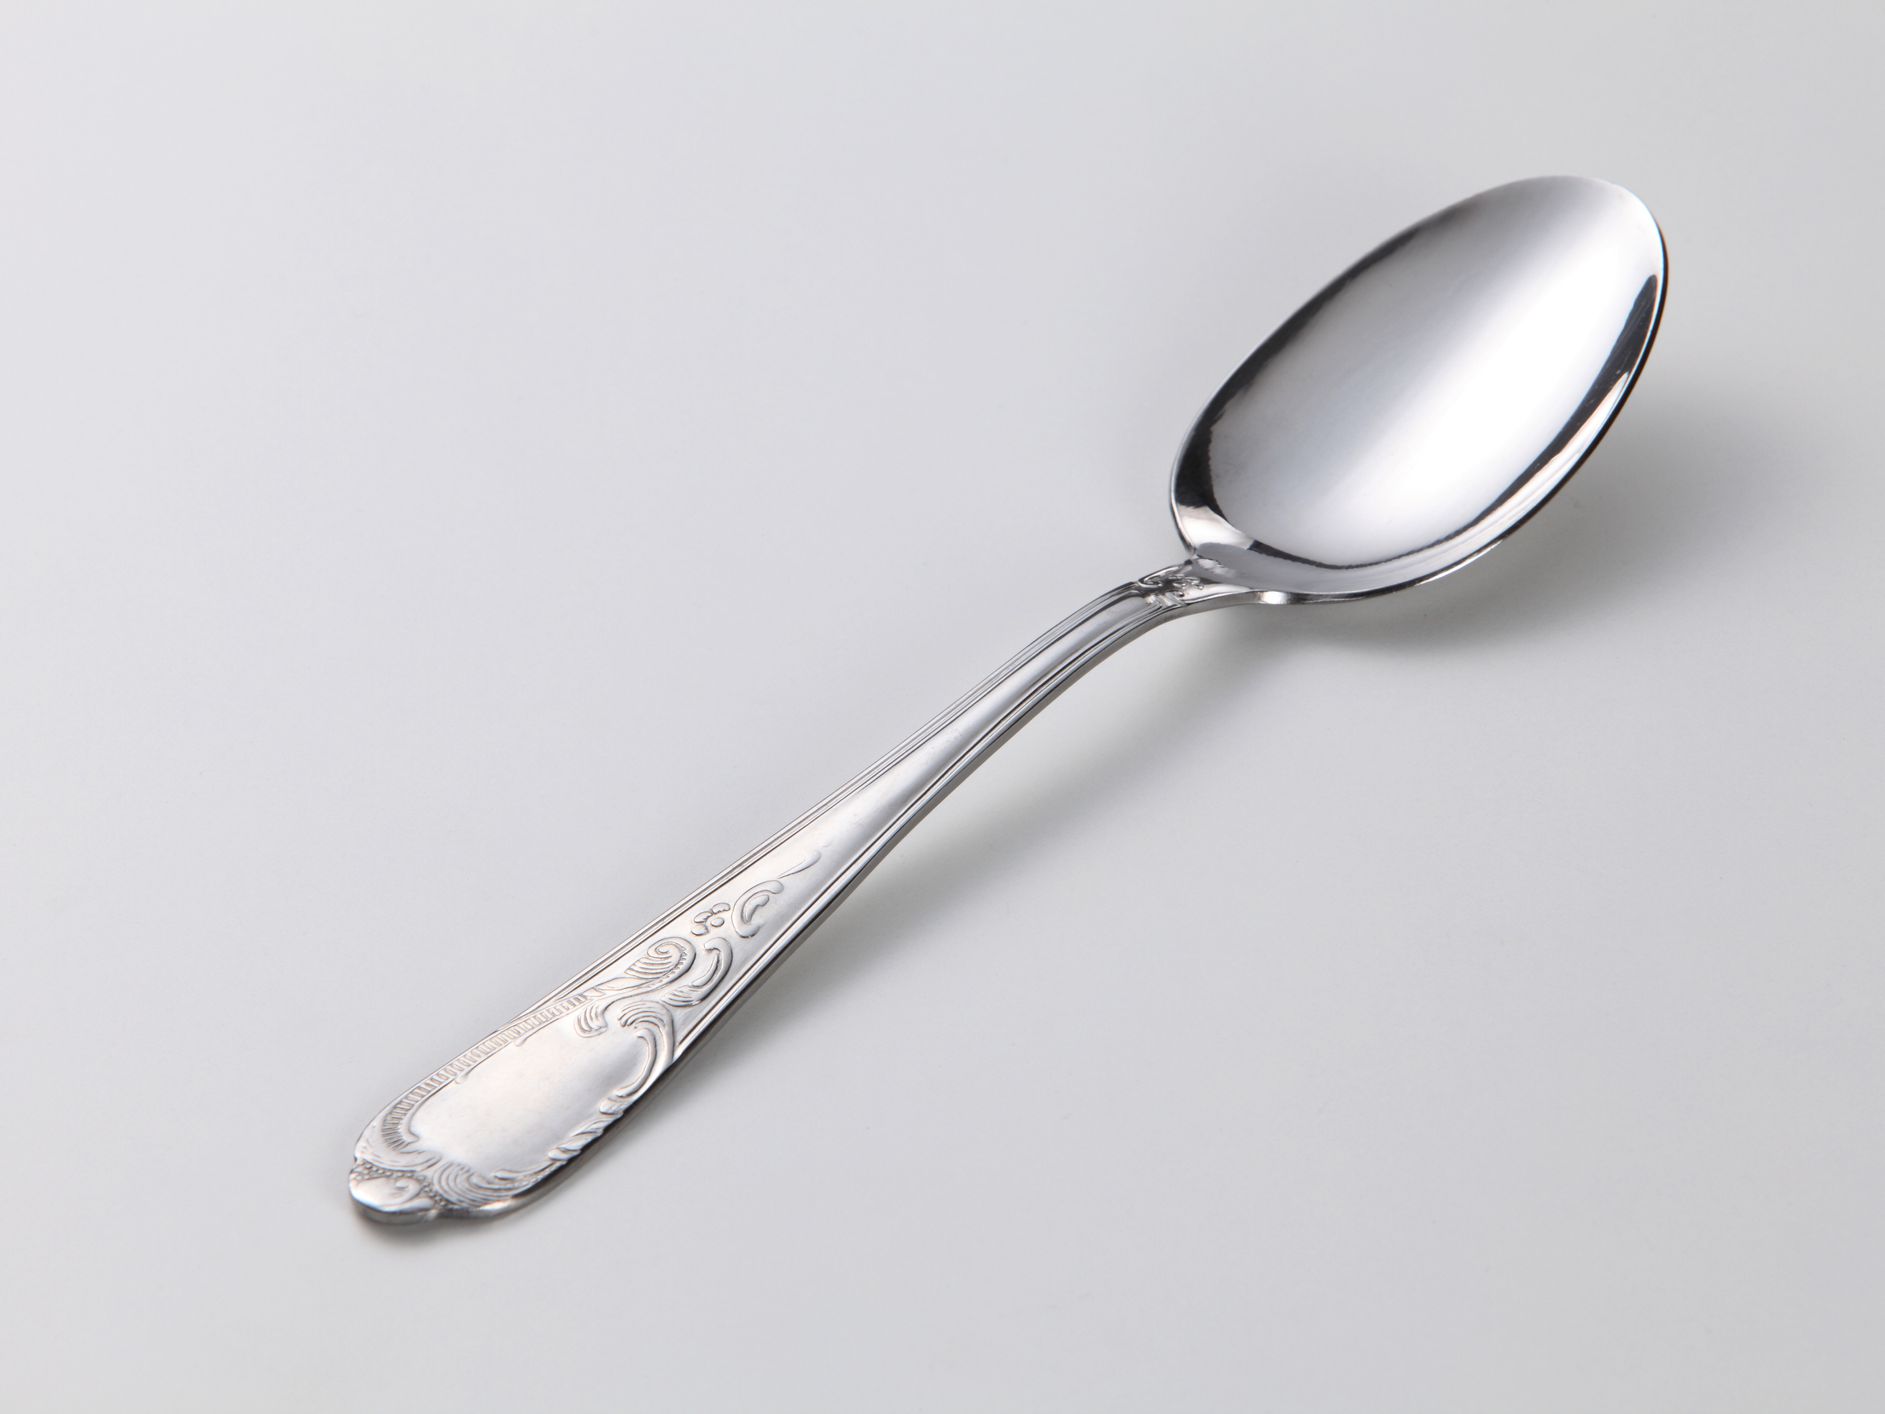 Image Of Spoon - KibrisPDR